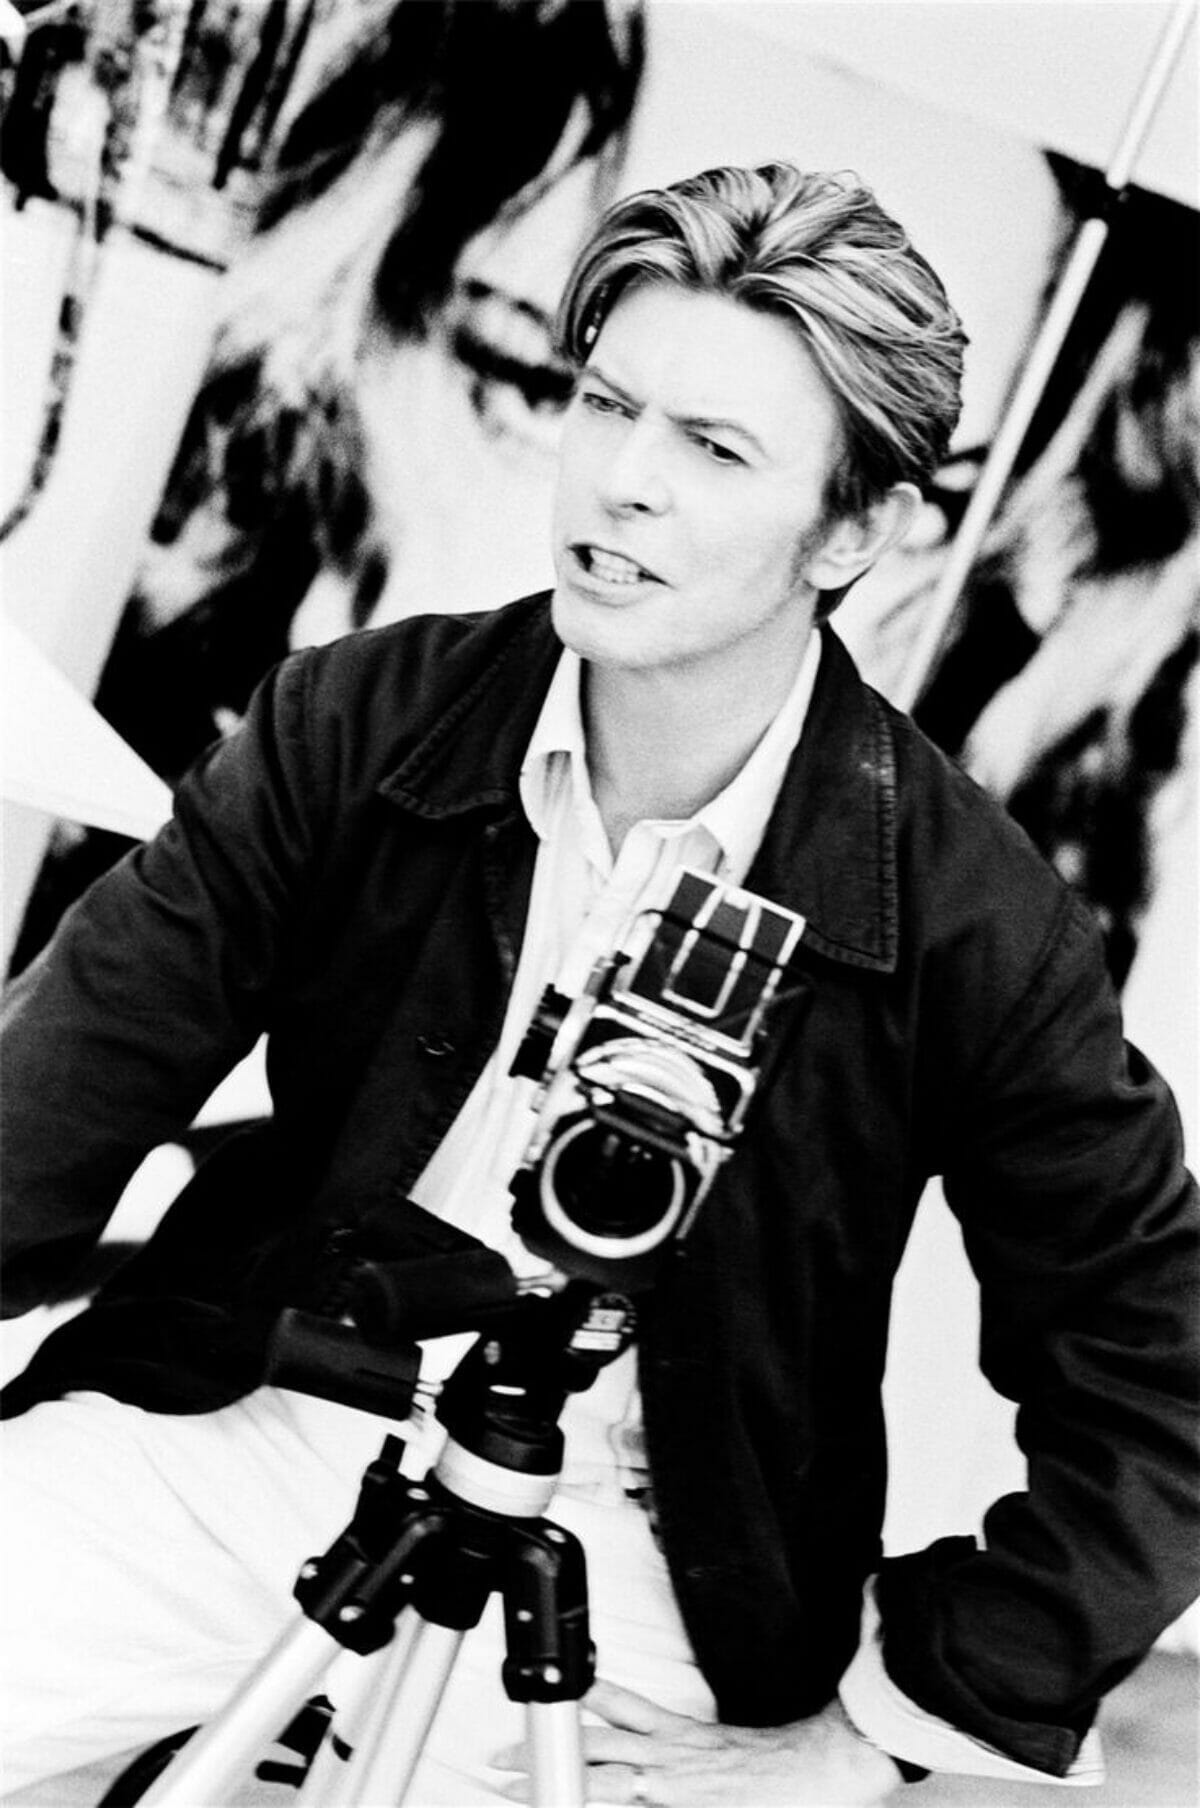 David-Bowie-camera